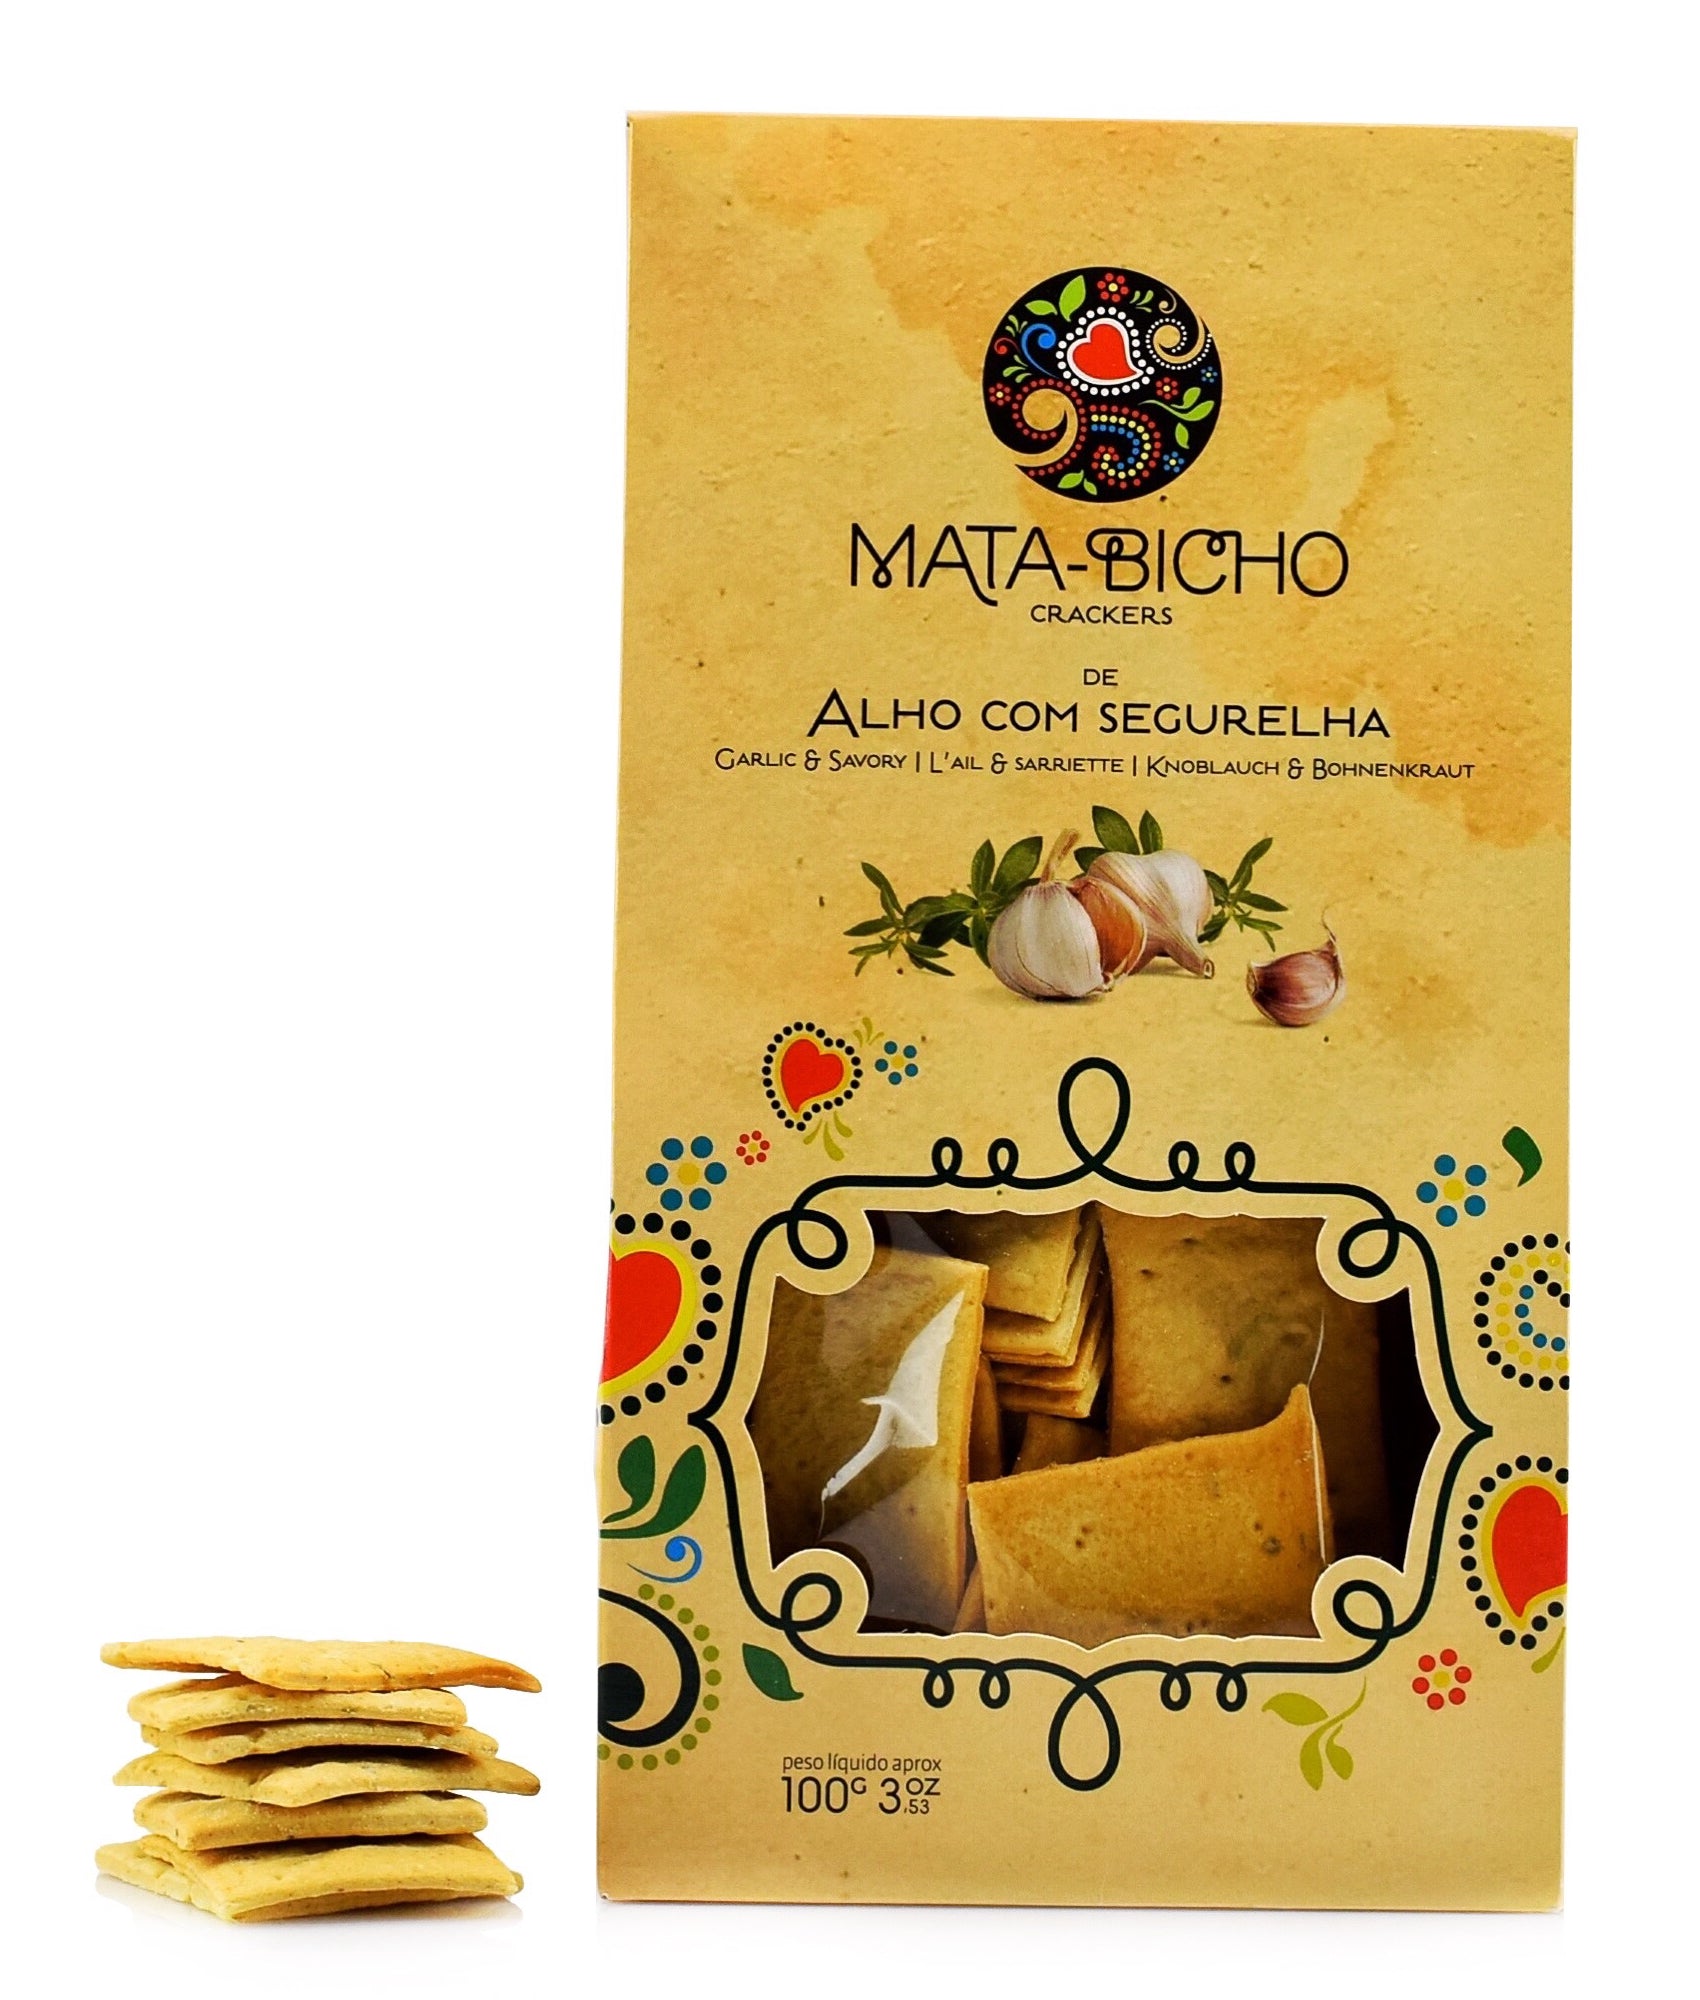 Crackers de Alho com Segurelha Mata-Bicho